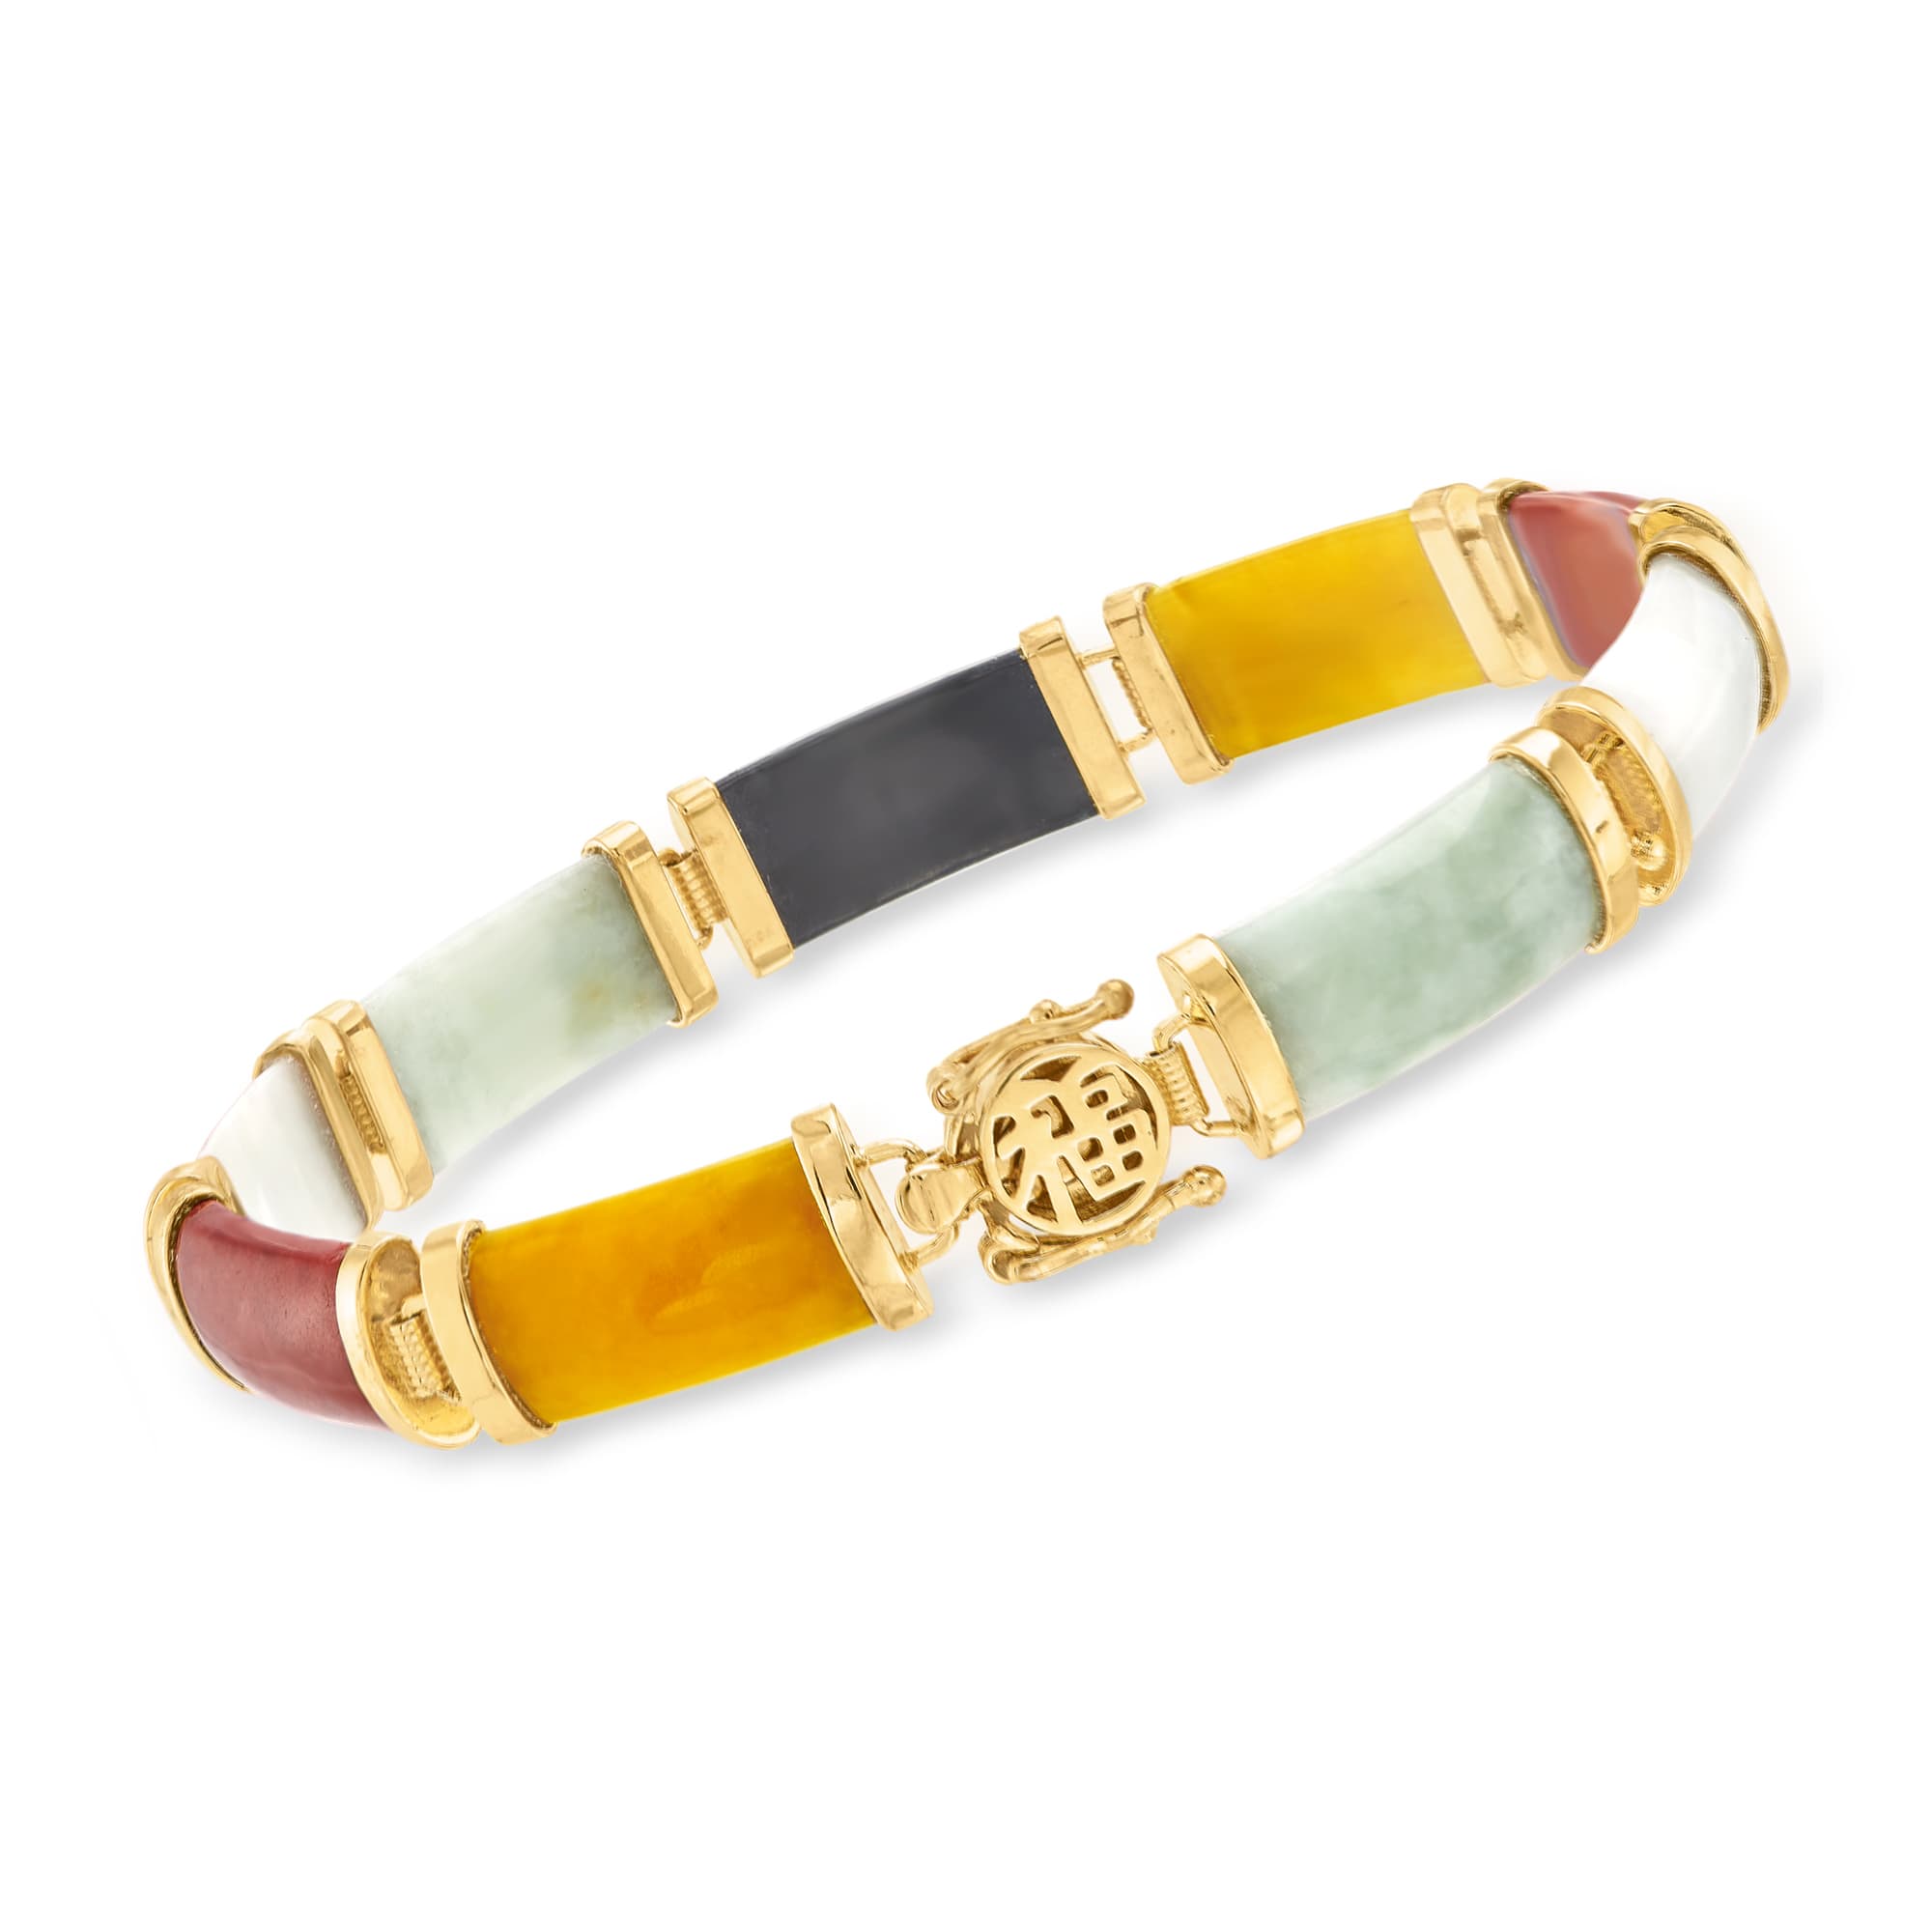 Multicolored Jade Good Fortune Bracelet in 18kt Gold Over Sterling